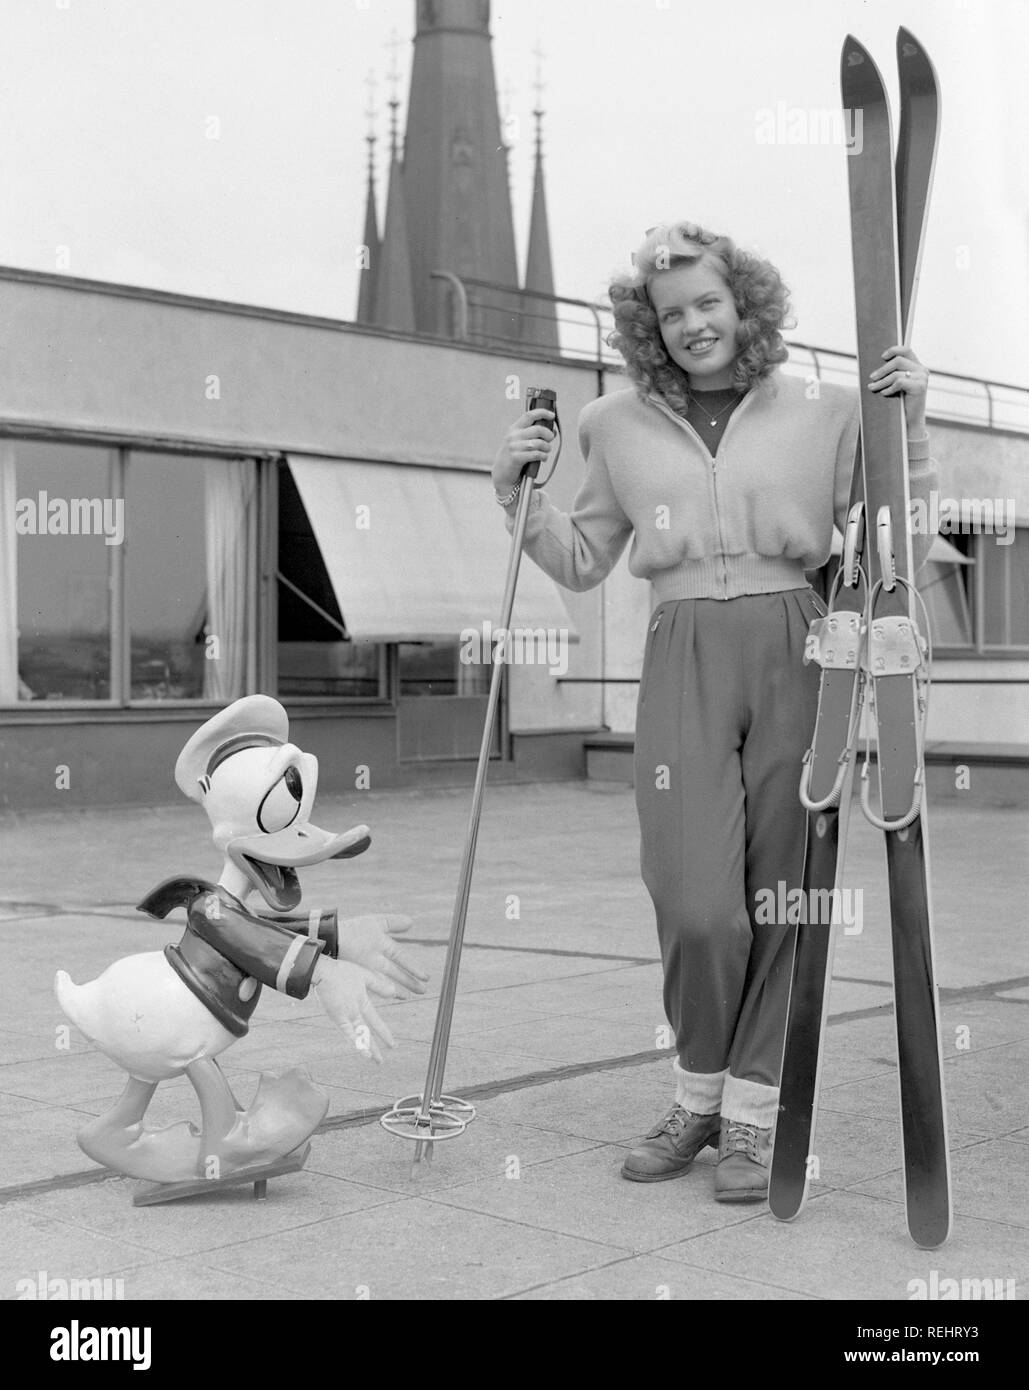 Wintersport in den 1950er Jahren. Eine junge blonde Frau mit ihrem Ski, Stöcke und Schuhe zusammen mit einem Donald Duck Figur. Schweden 1952. Foto Kristoffersson Ref 179 A-1 Stockfoto